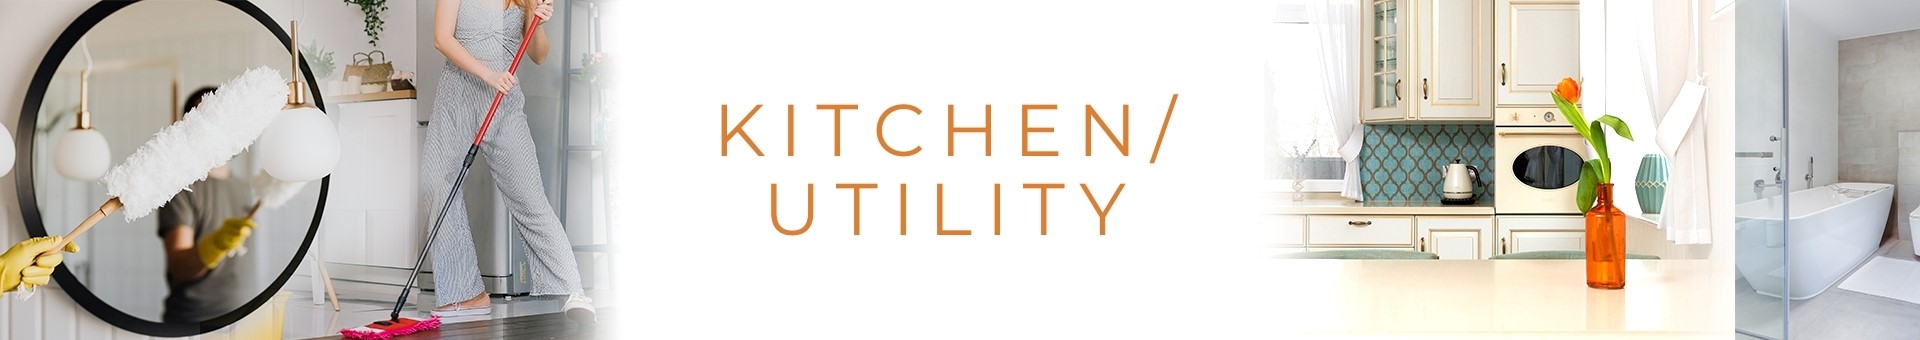 Kitchen/Utility